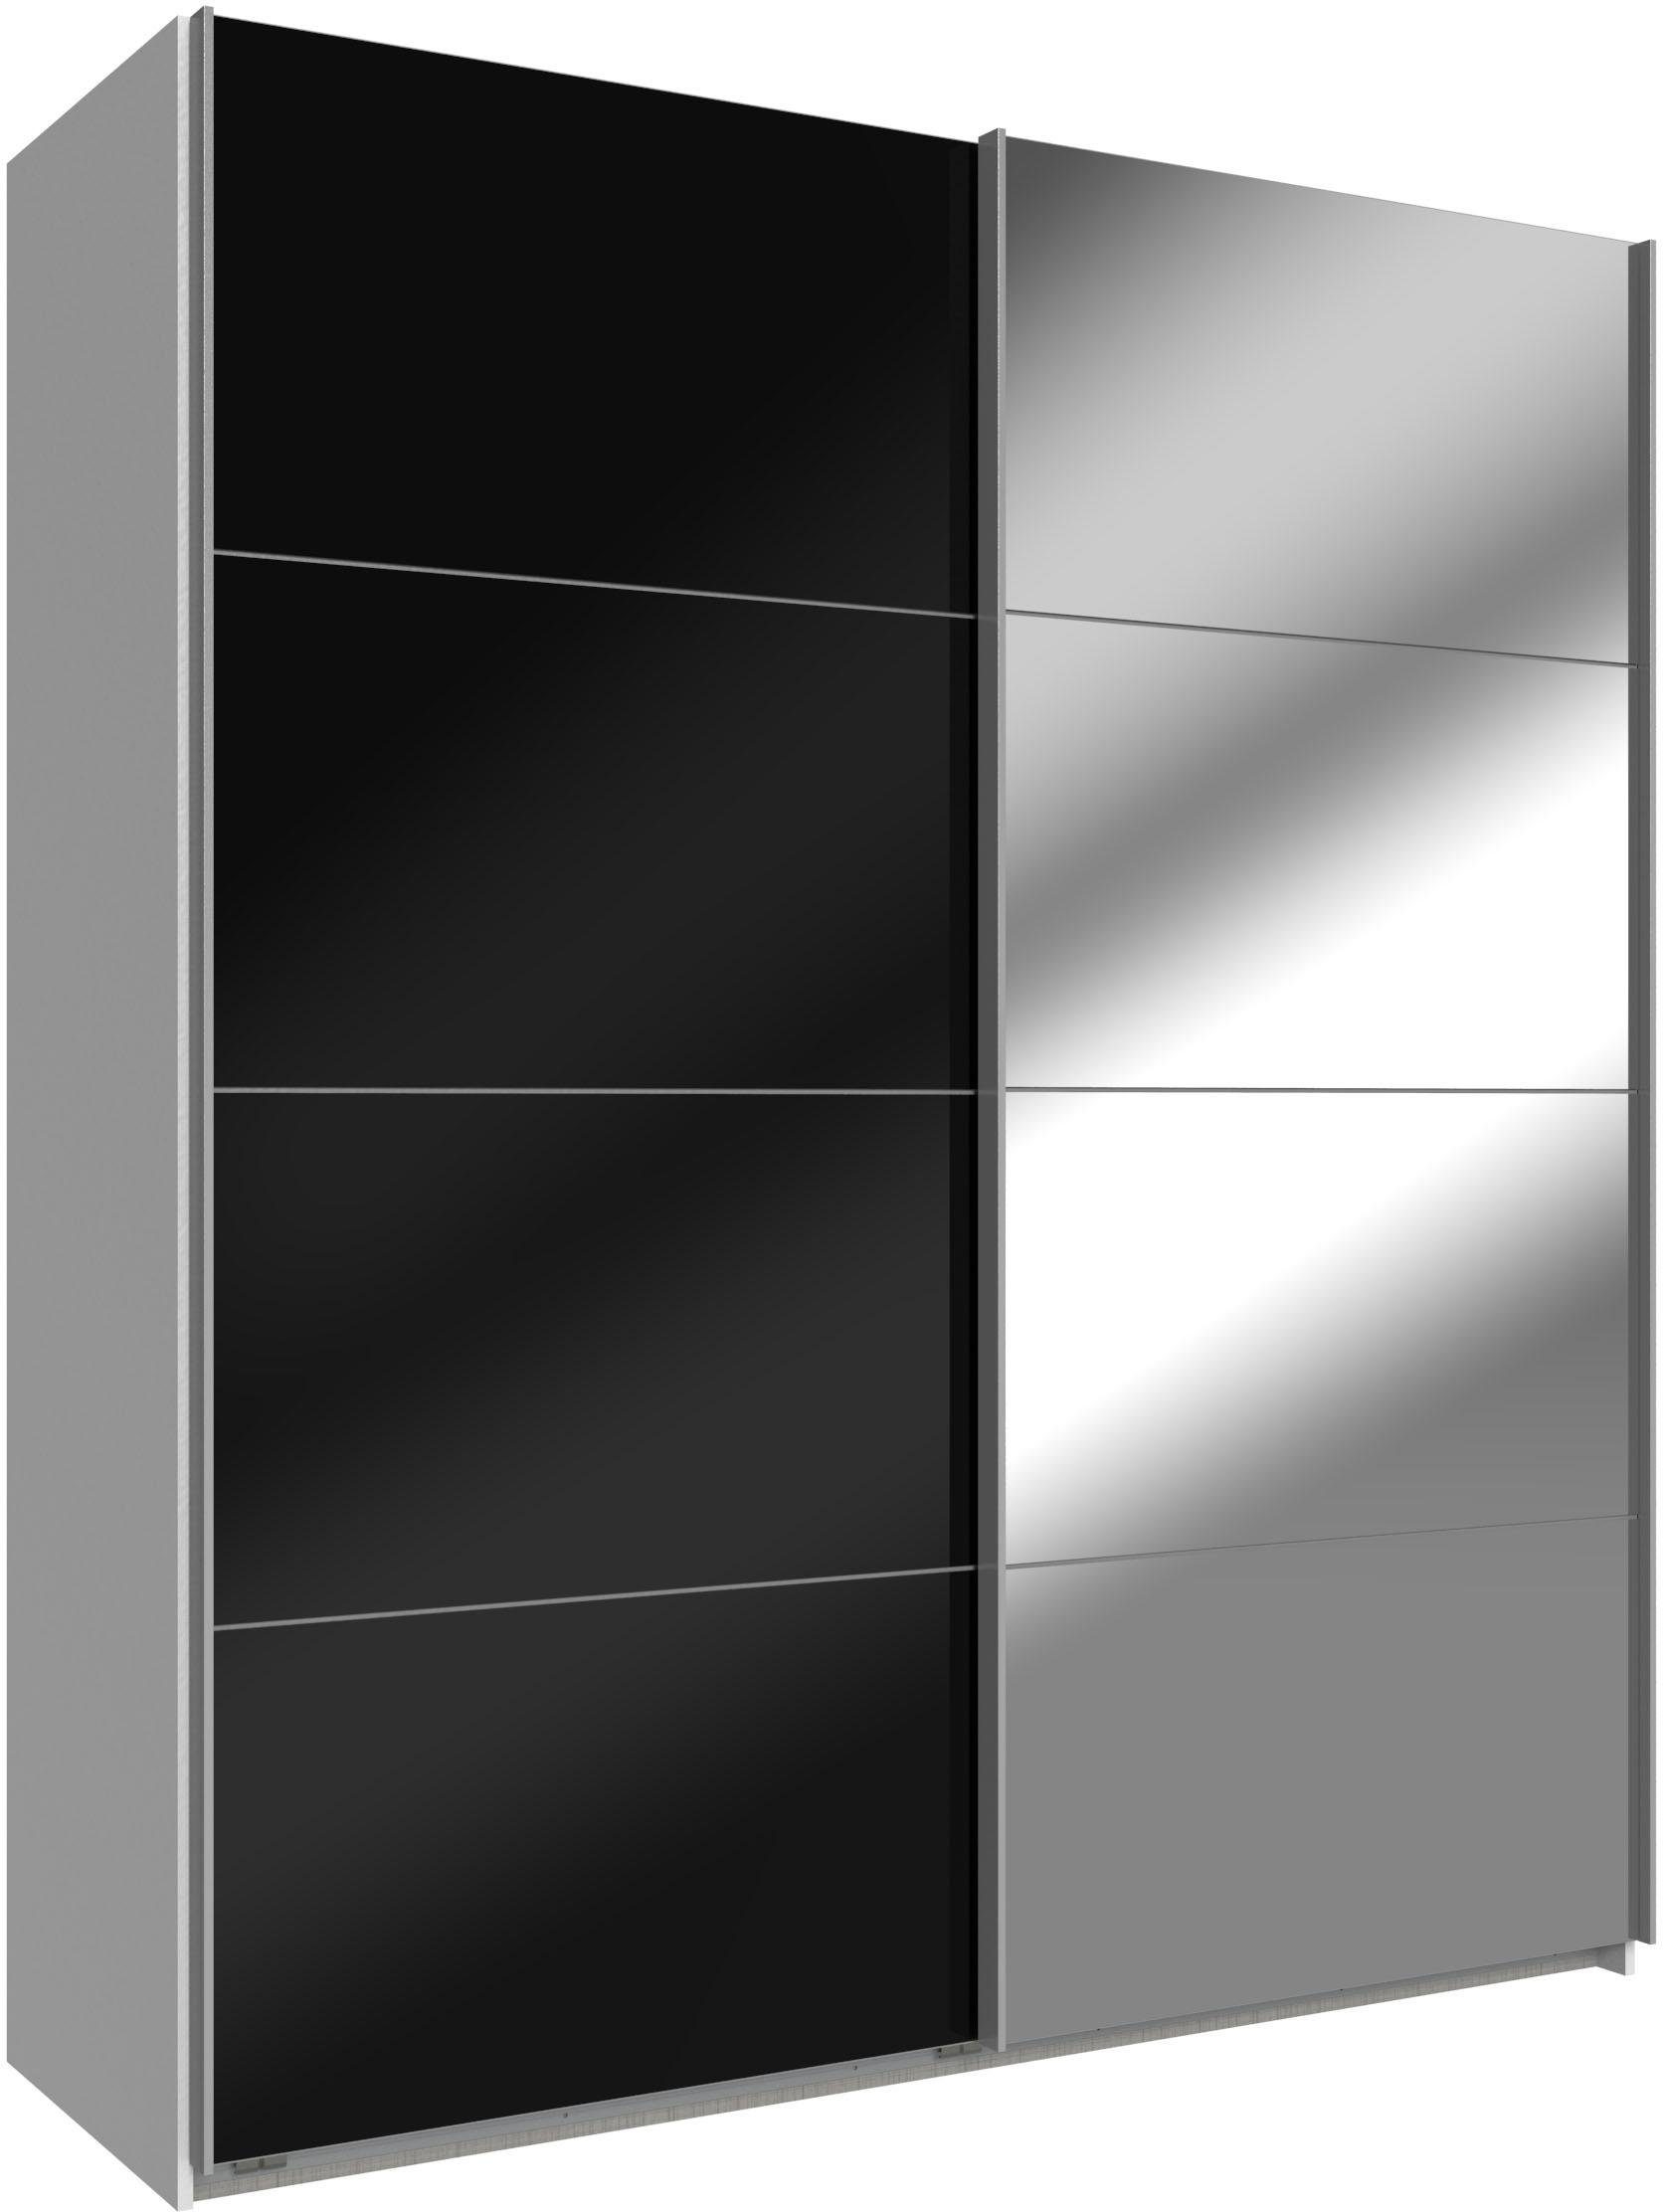 Wimex Schwebetürenschrank Easy mit Glas und Spiegel weiß, Schwarzglas/Spiegel